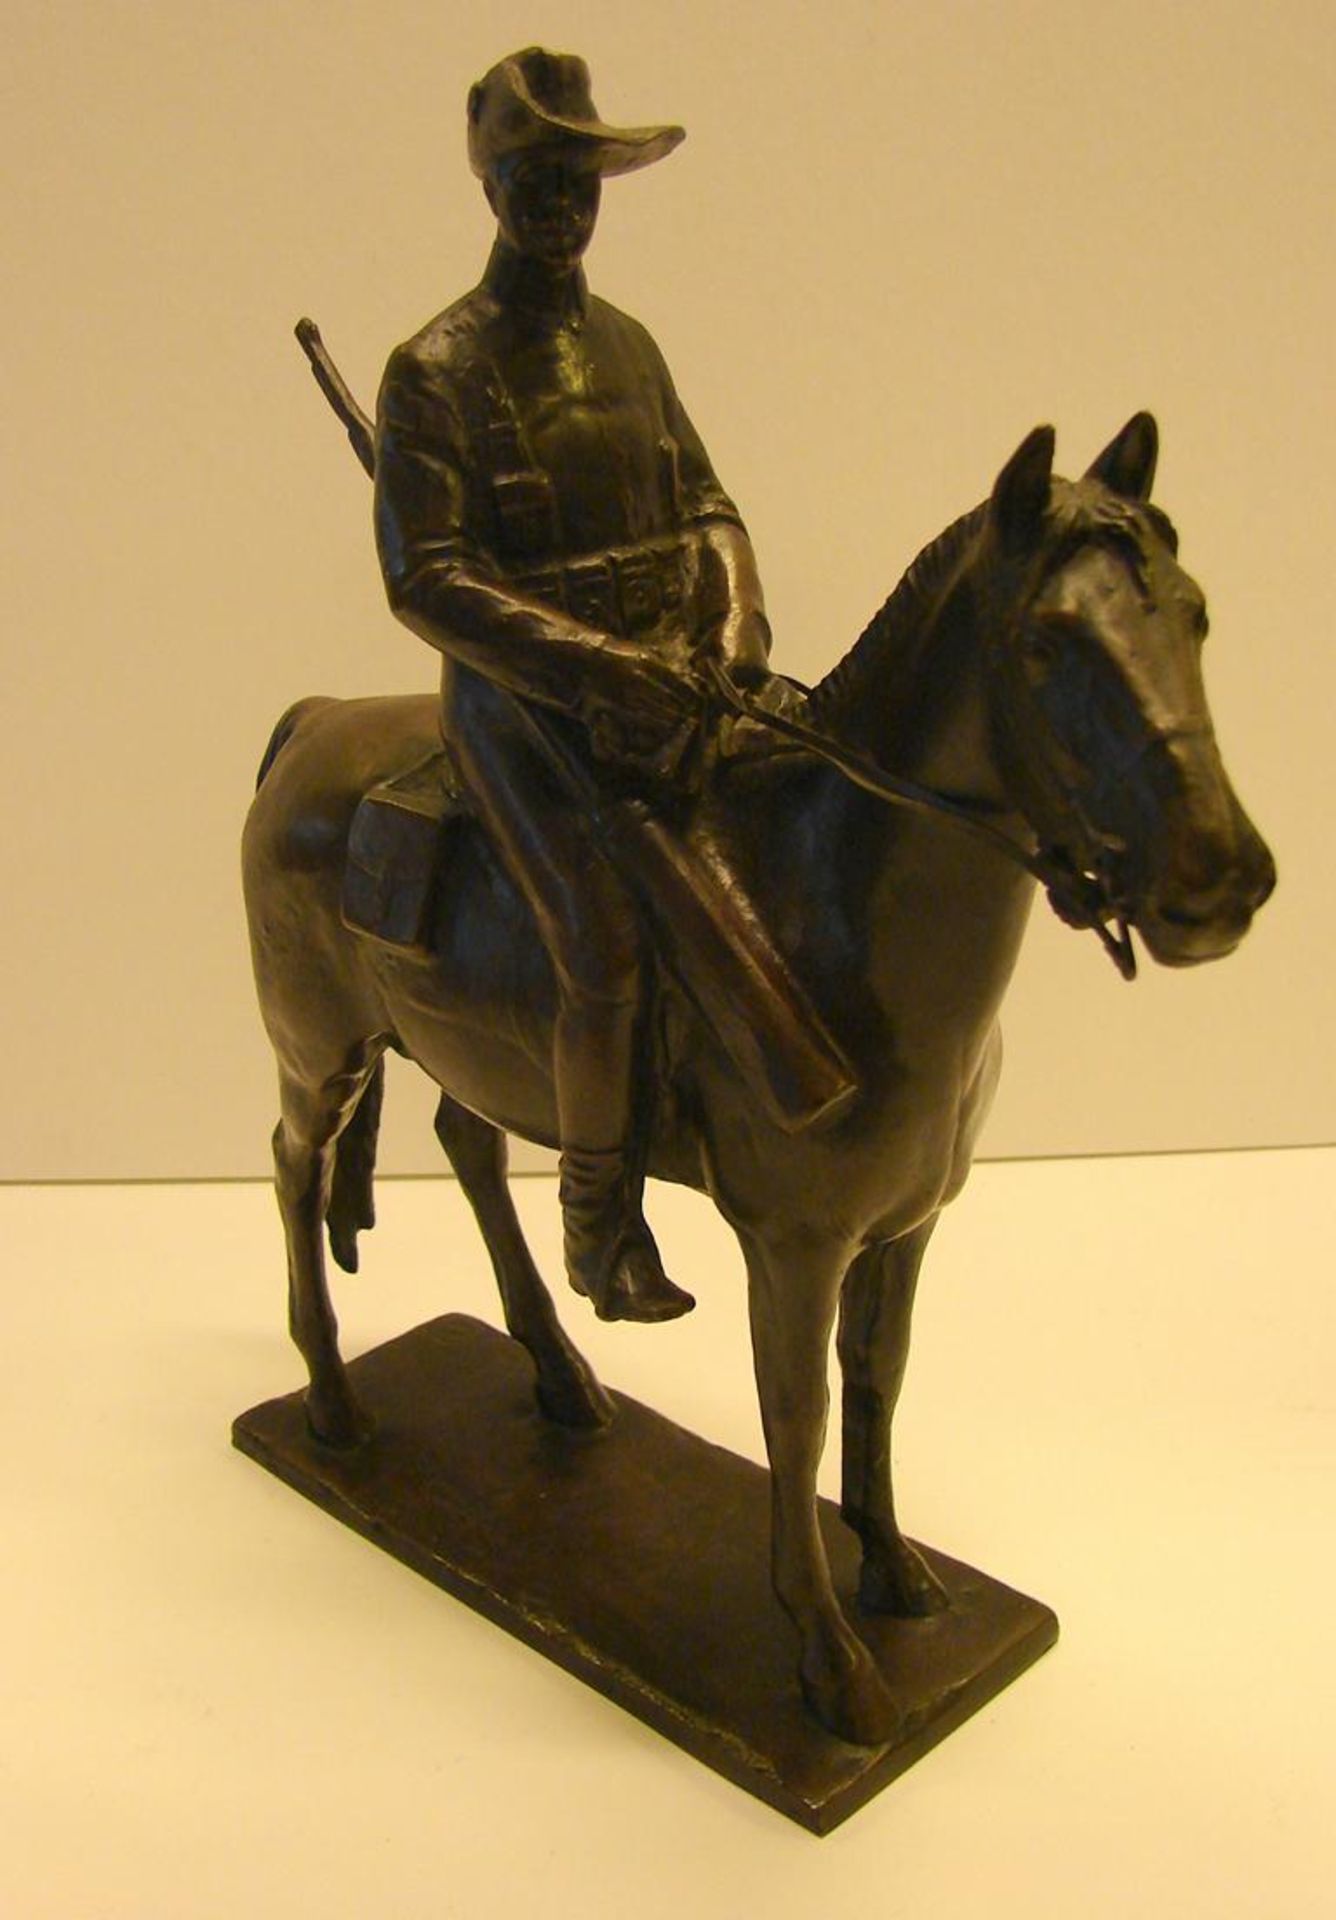 Bronze, "Reiter auf Pferd", sig. Fritz Kraus, H 27 cm, Westend 1910, Gieserstempel, Berlin, Mar ...